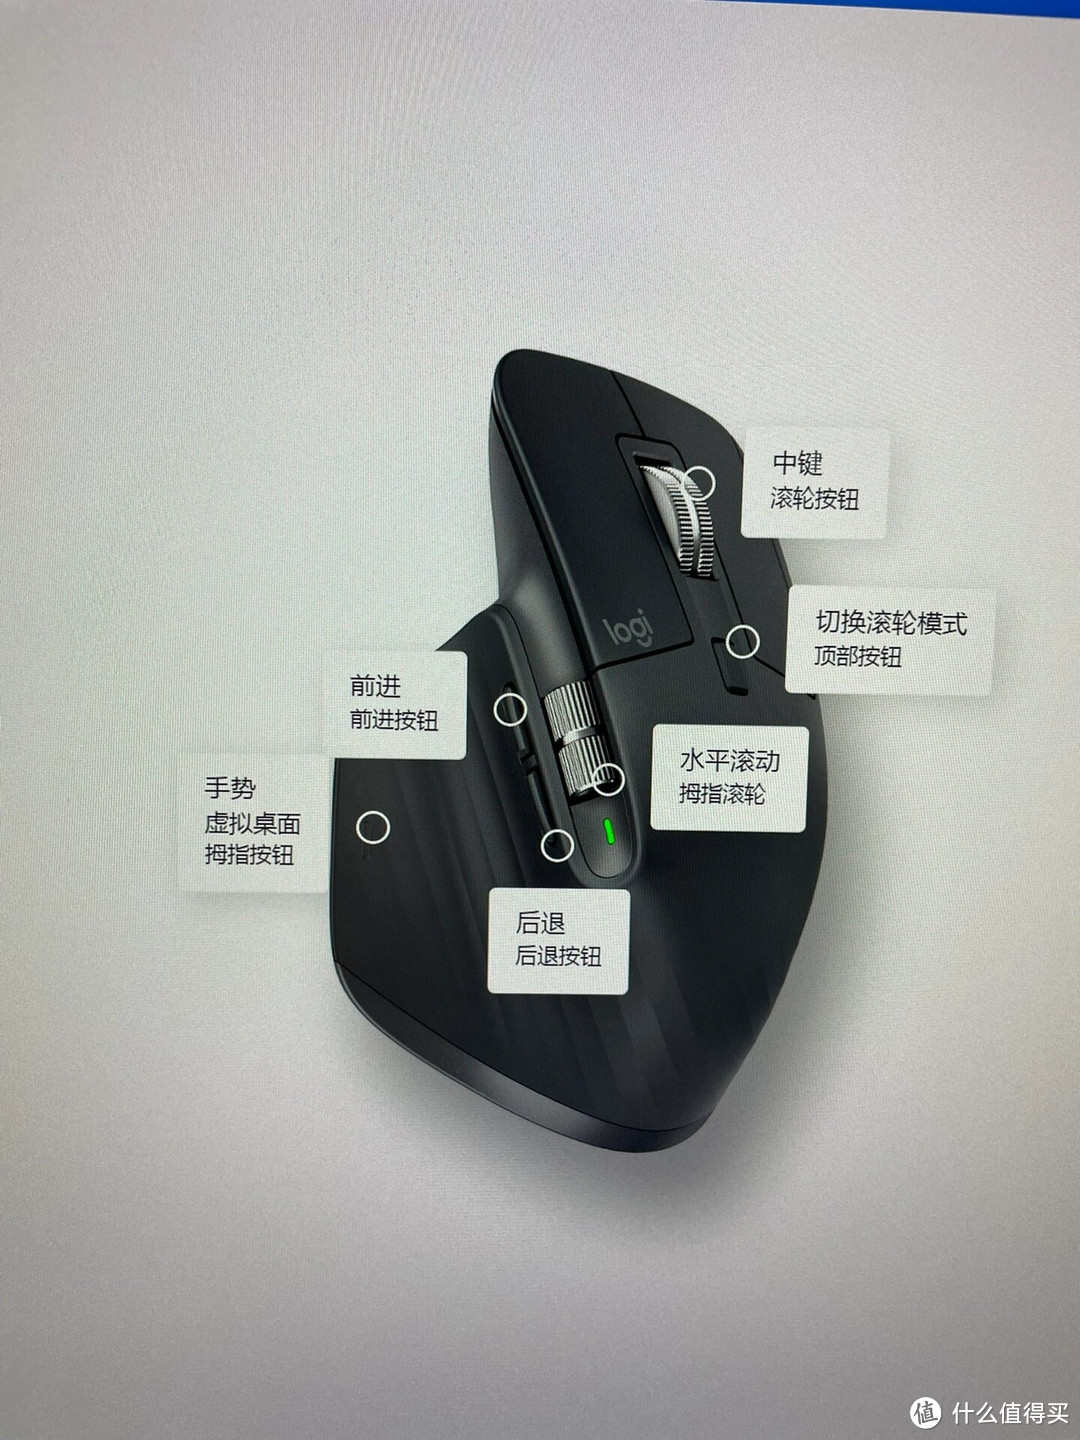 罗技MX Master 3S鼠标与MX Keys键盘使用体验分享 在科技日新月异